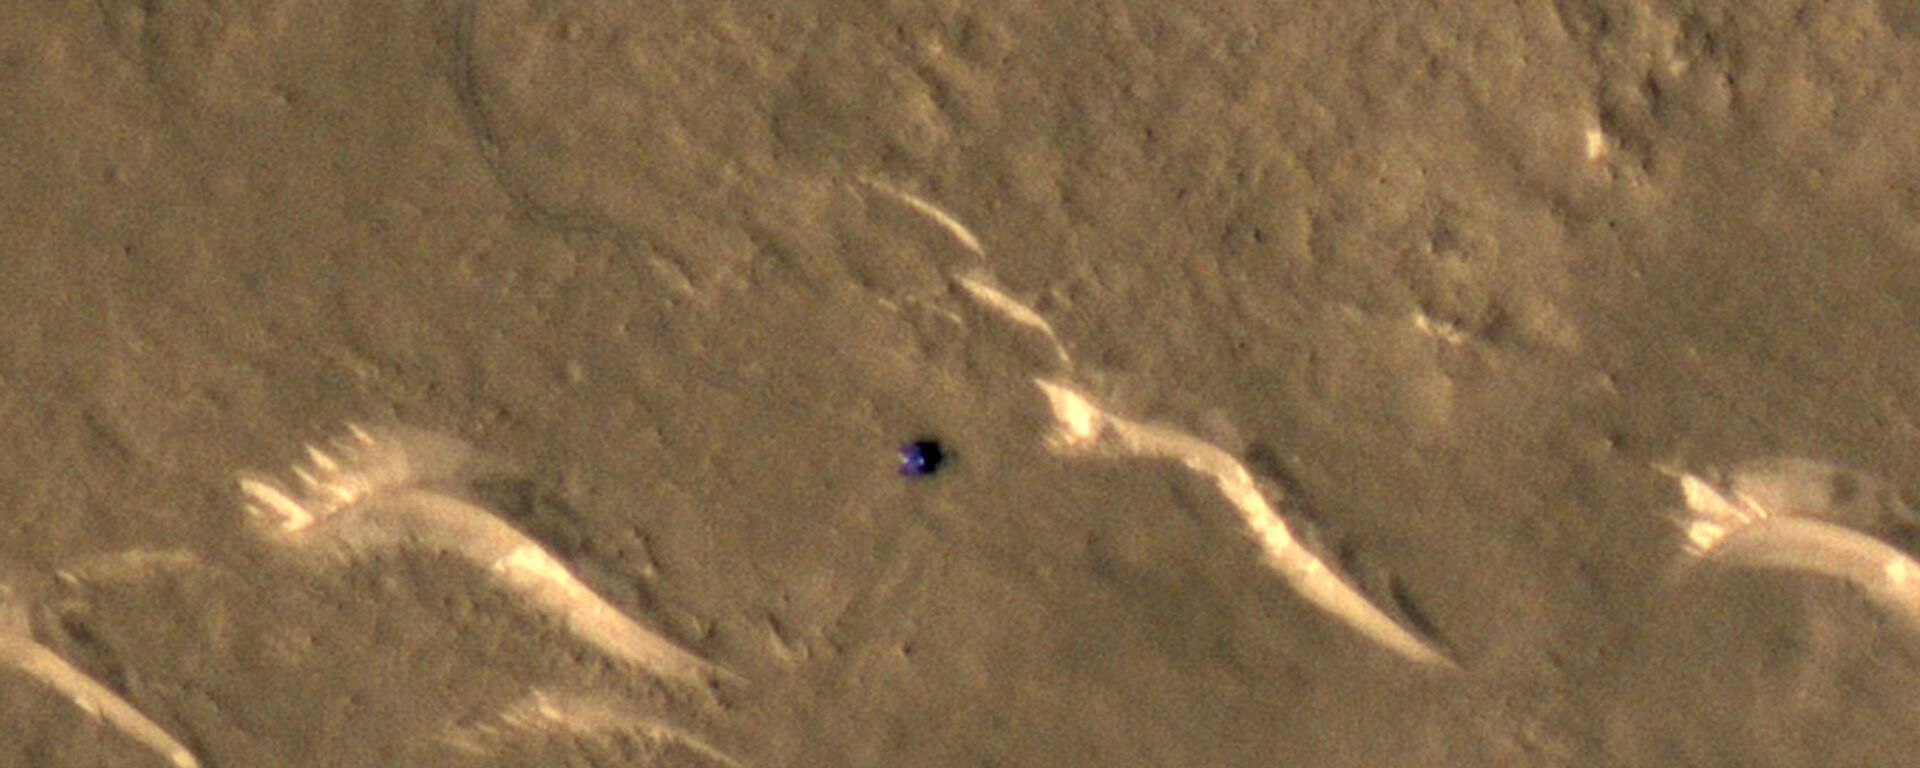 Imagem do rover Zhurong capturada pela câmera de alta definição HiRISE, que está a bordo do MRO - Sputnik Brasil, 1920, 23.03.2022